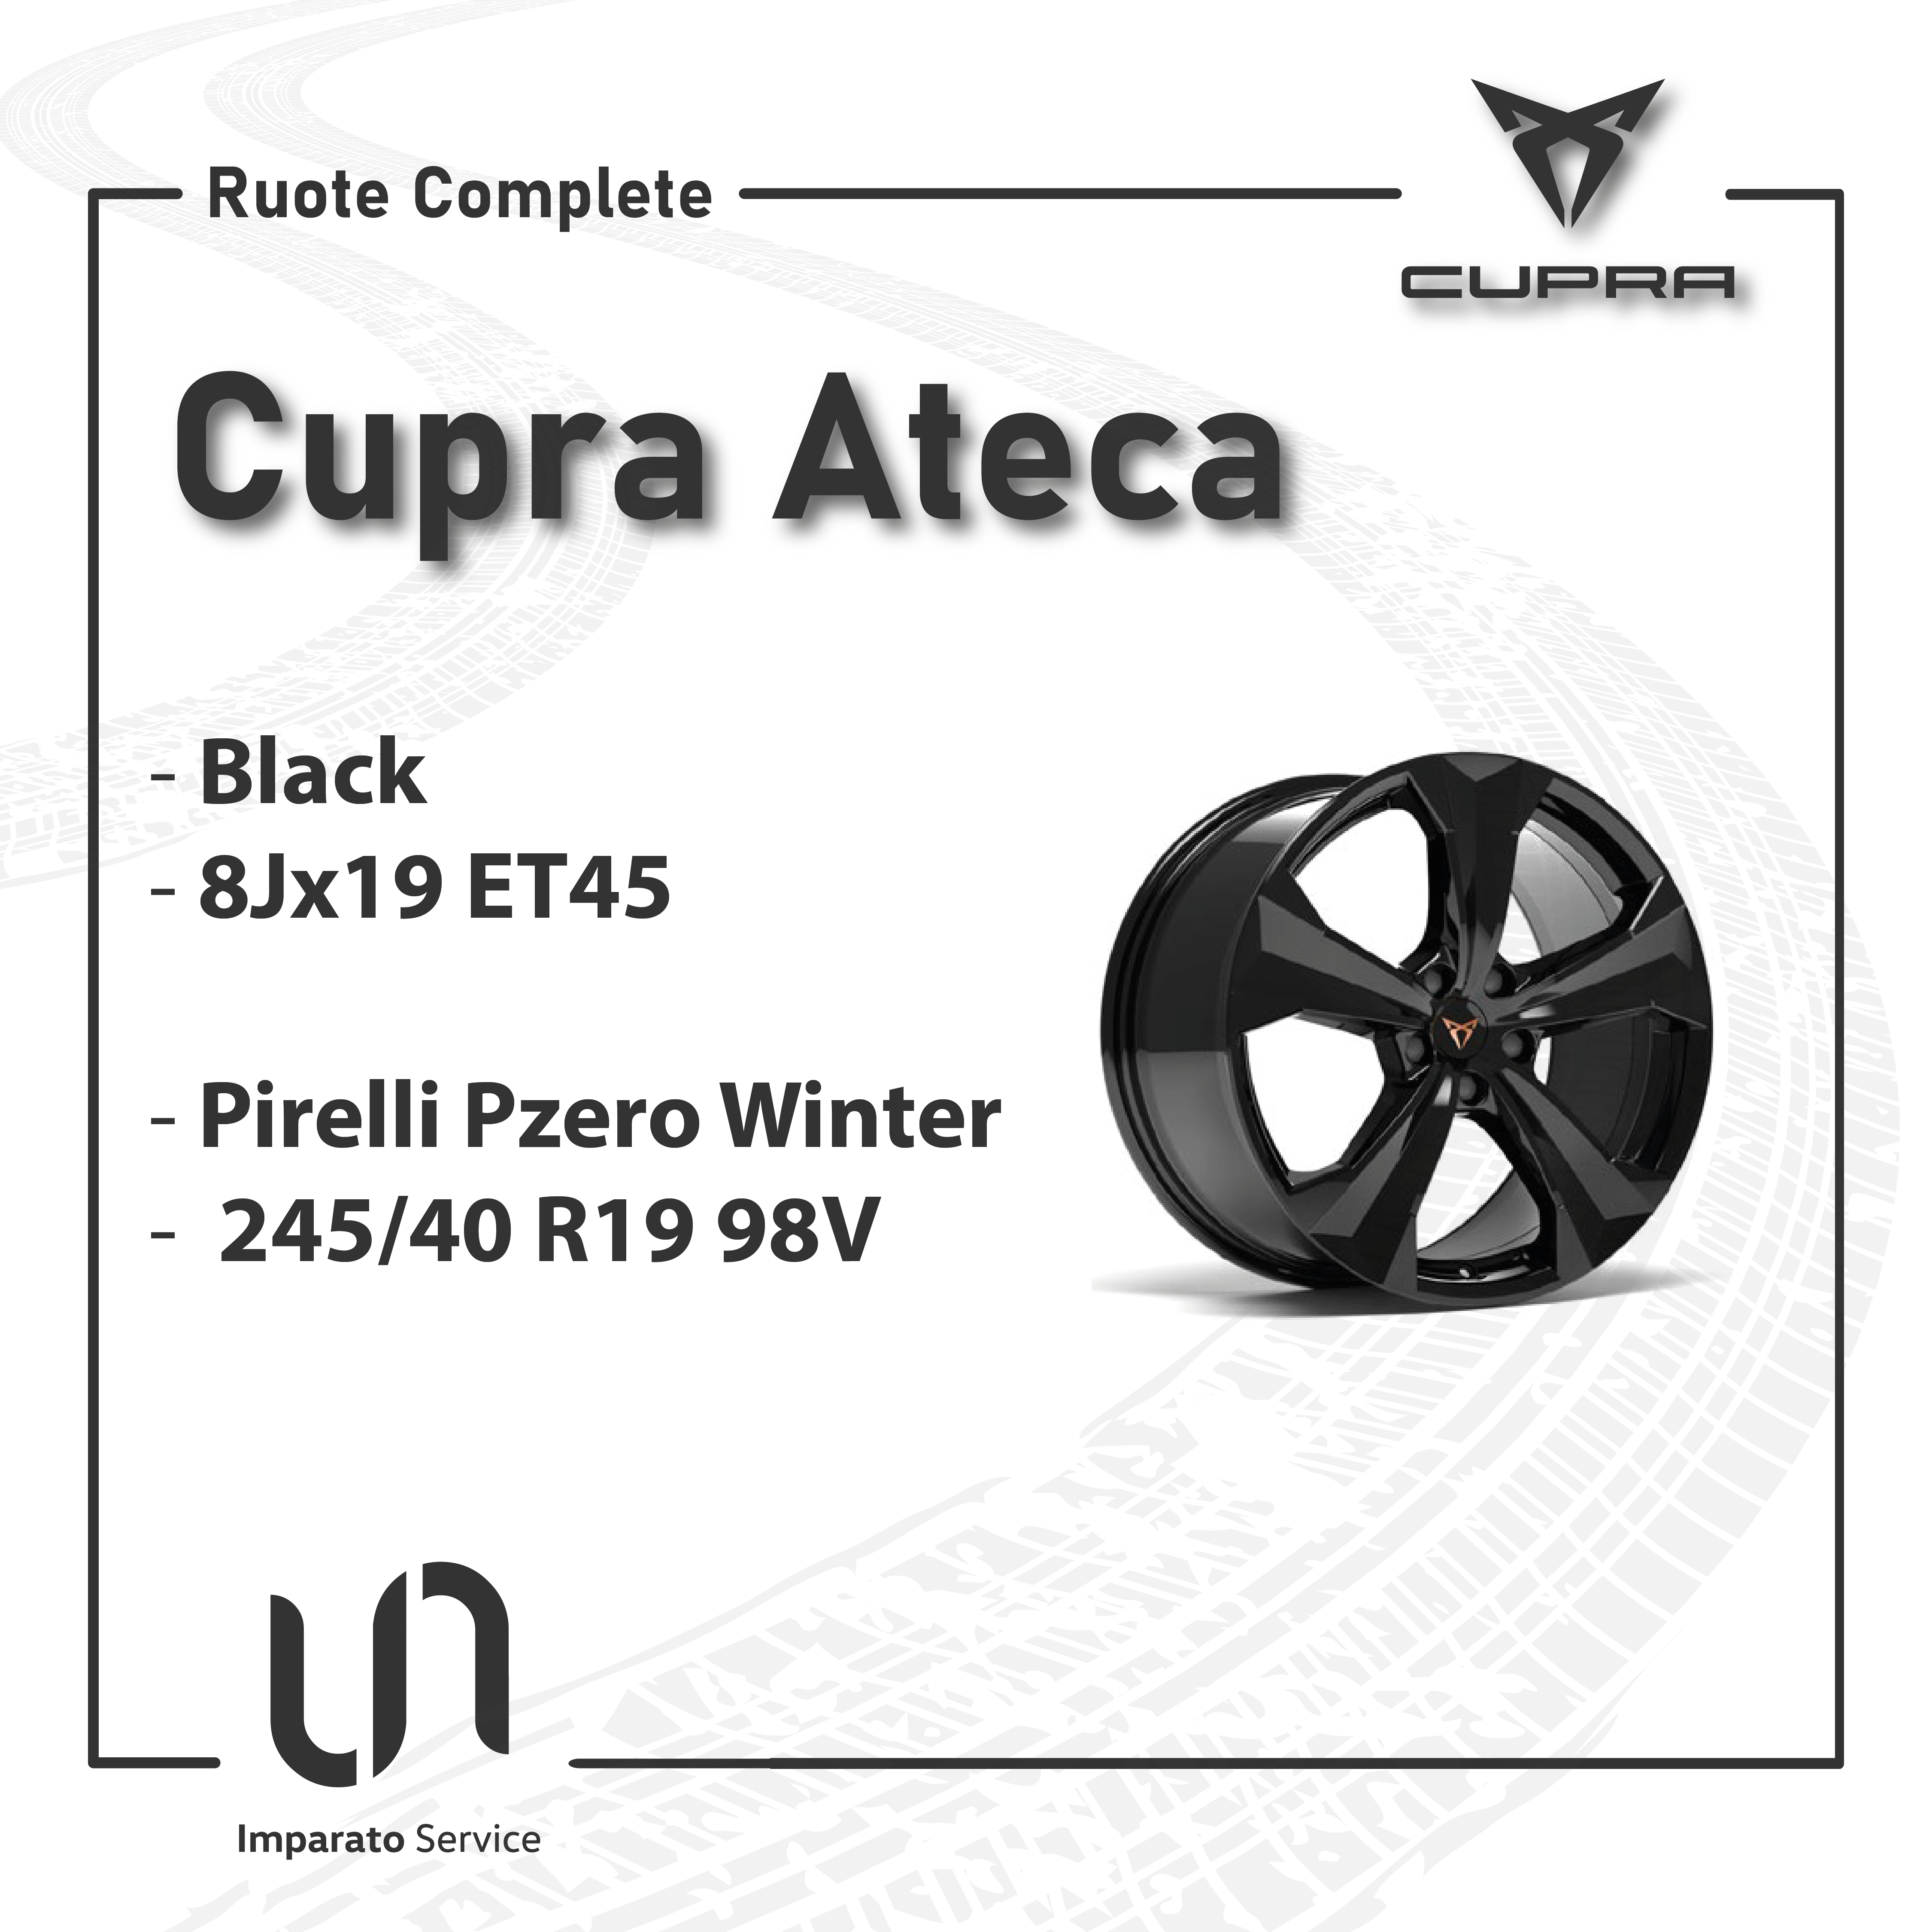 Cupra-Ateca